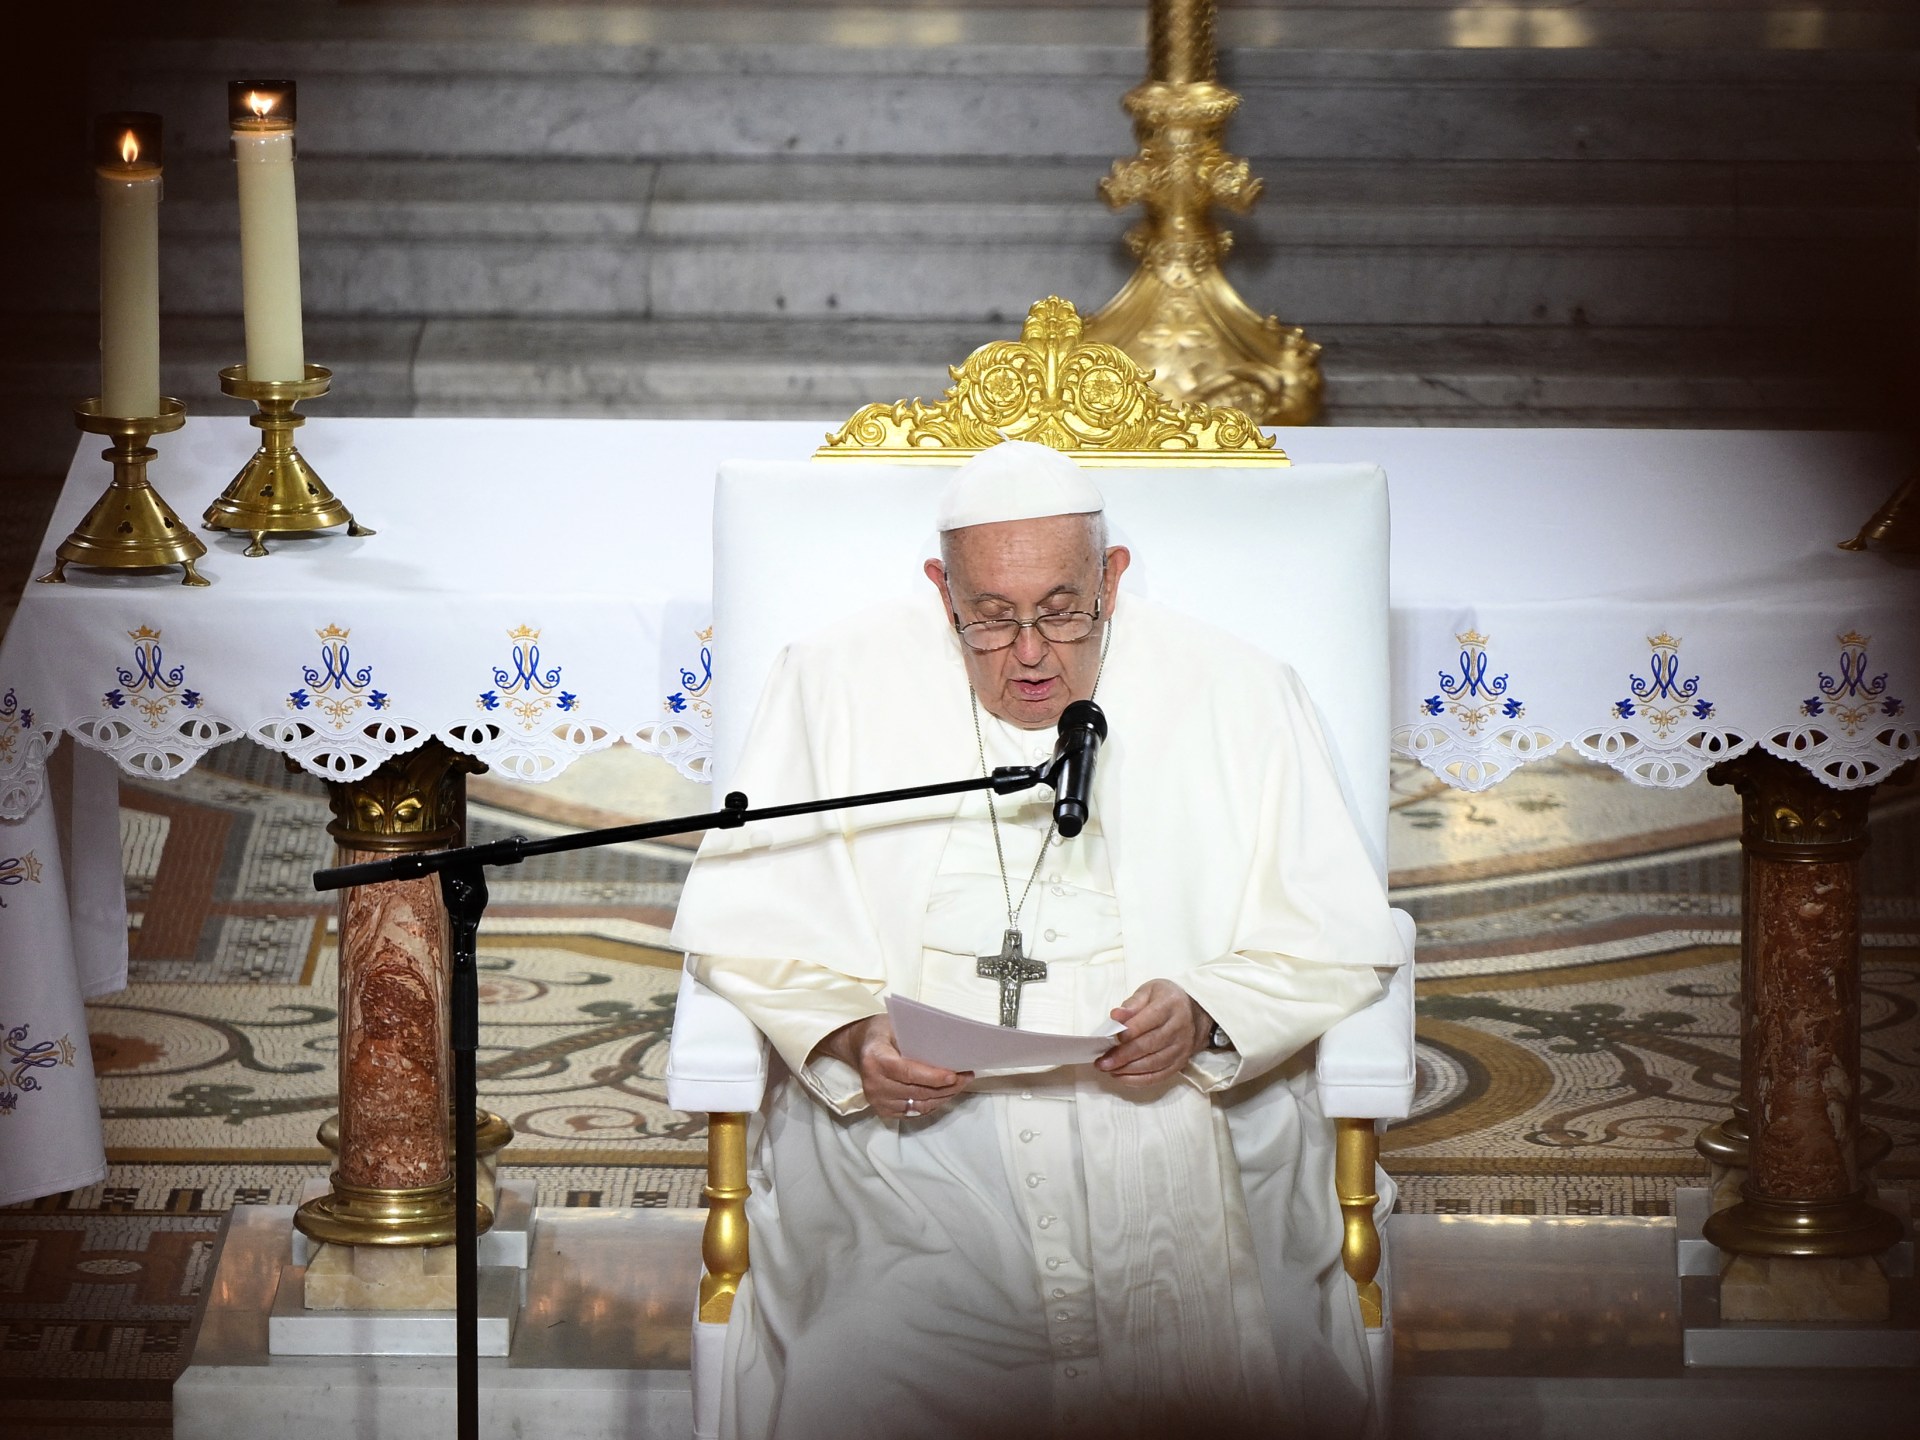 Il Papa critica “l’indifferenza” verso i migranti che arrivano in Europa via mare  Notizie sull’immigrazione